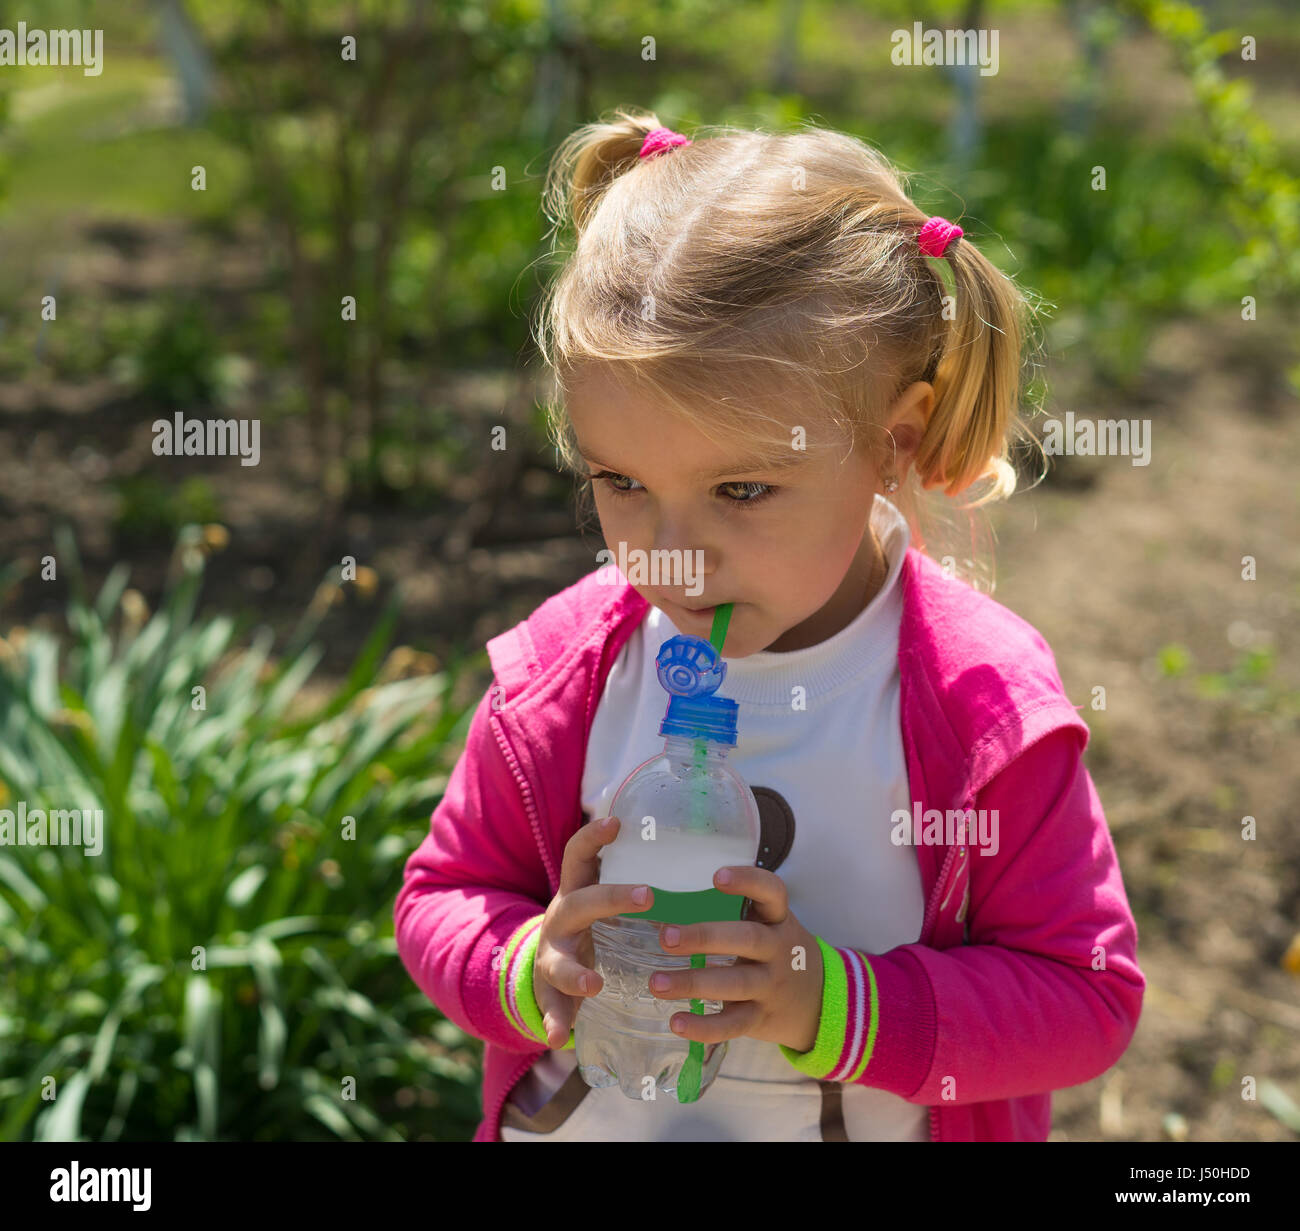 Petite fille mignonne l'eau potable de la bouteille en plastique. photo ensoleillée Banque D'Images